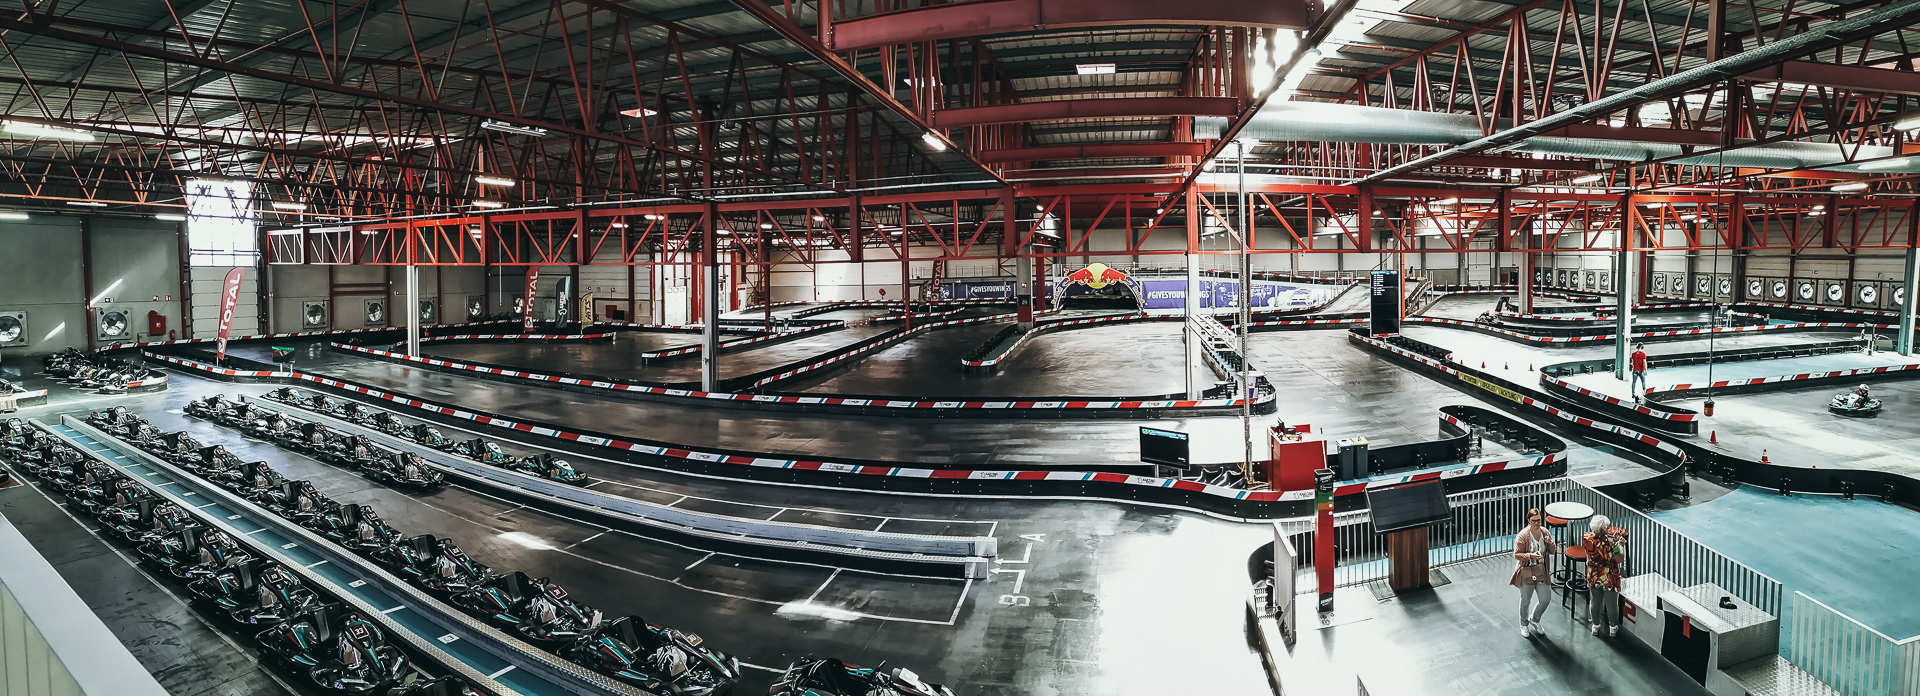 circuit de karting indoor